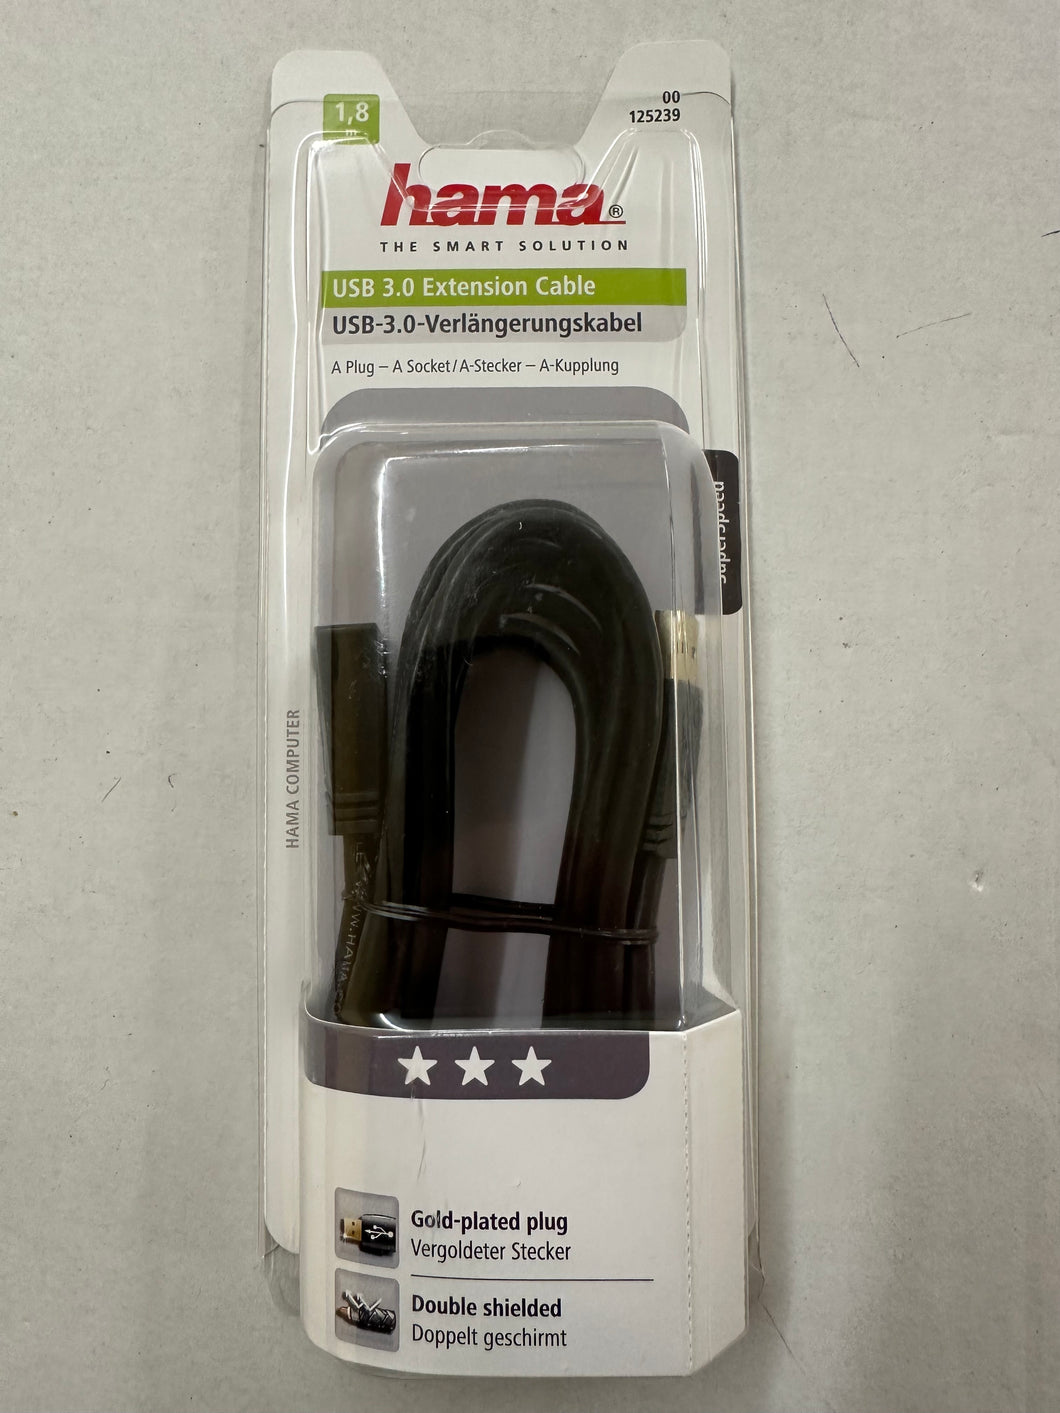 Hama 00125239 USB-3.0-Verlängerungskabel1.8m ,gold